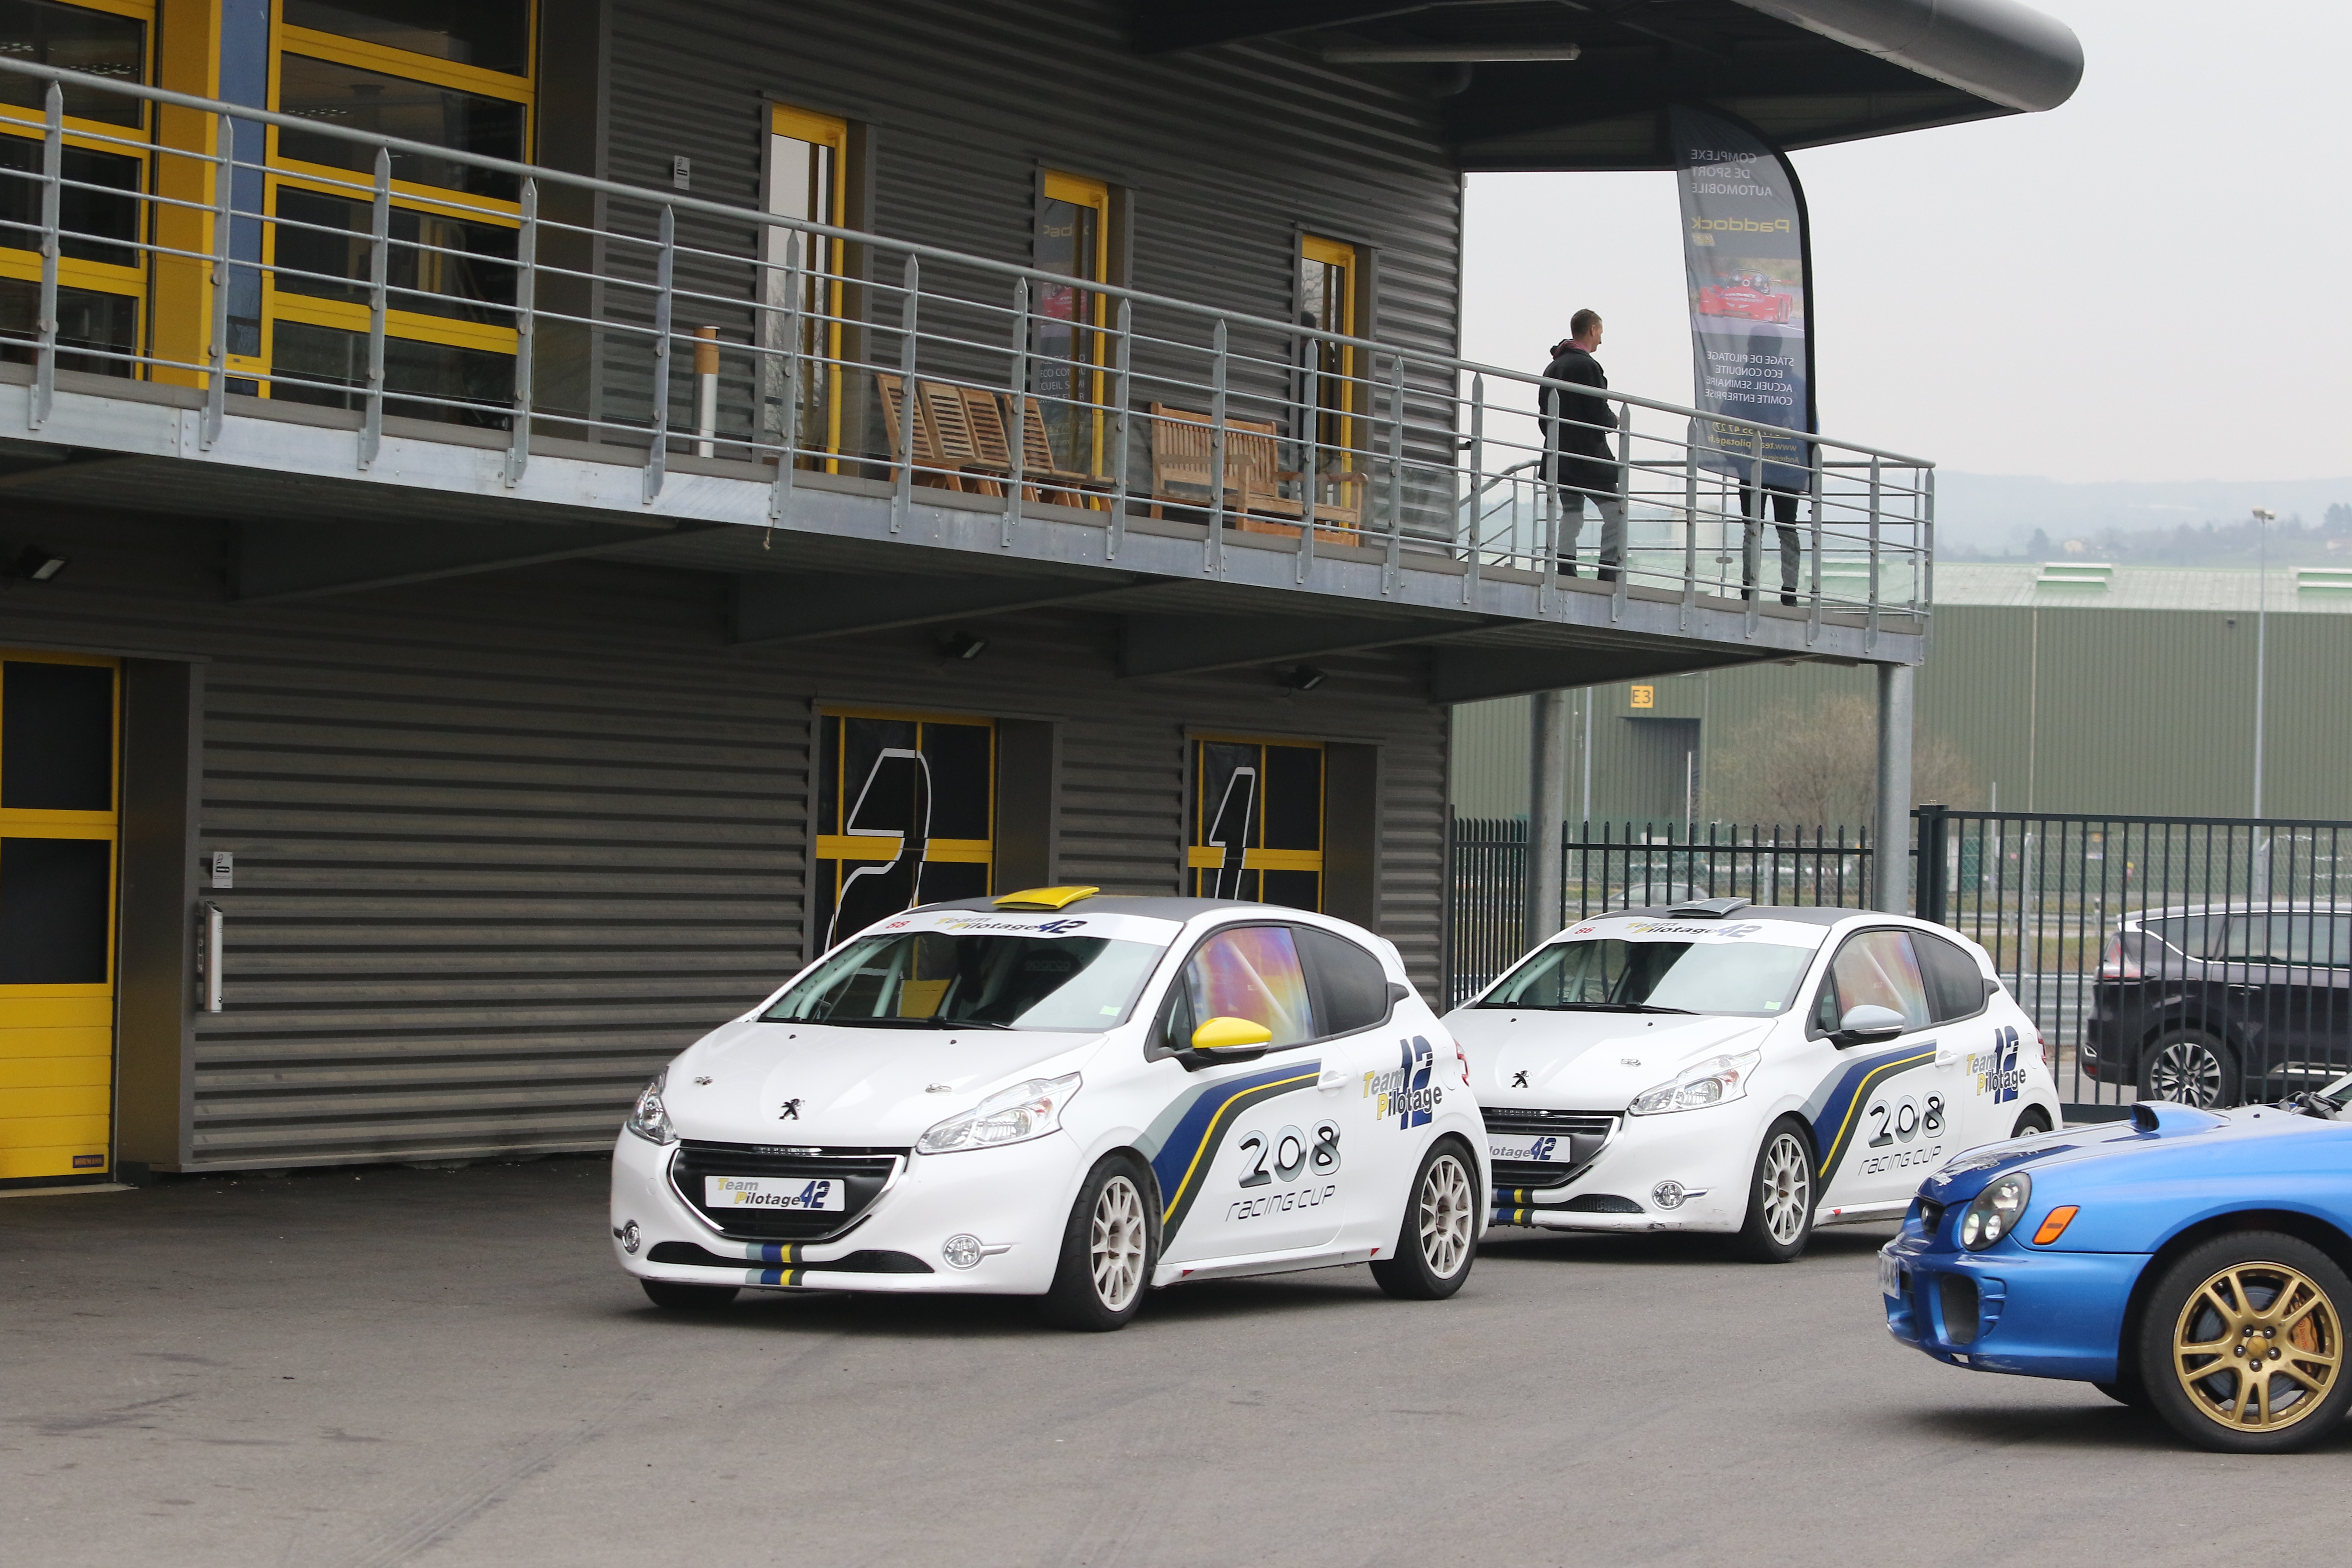 Les voitures de courses au paddock du circuit team pilotage Rhône Alpes